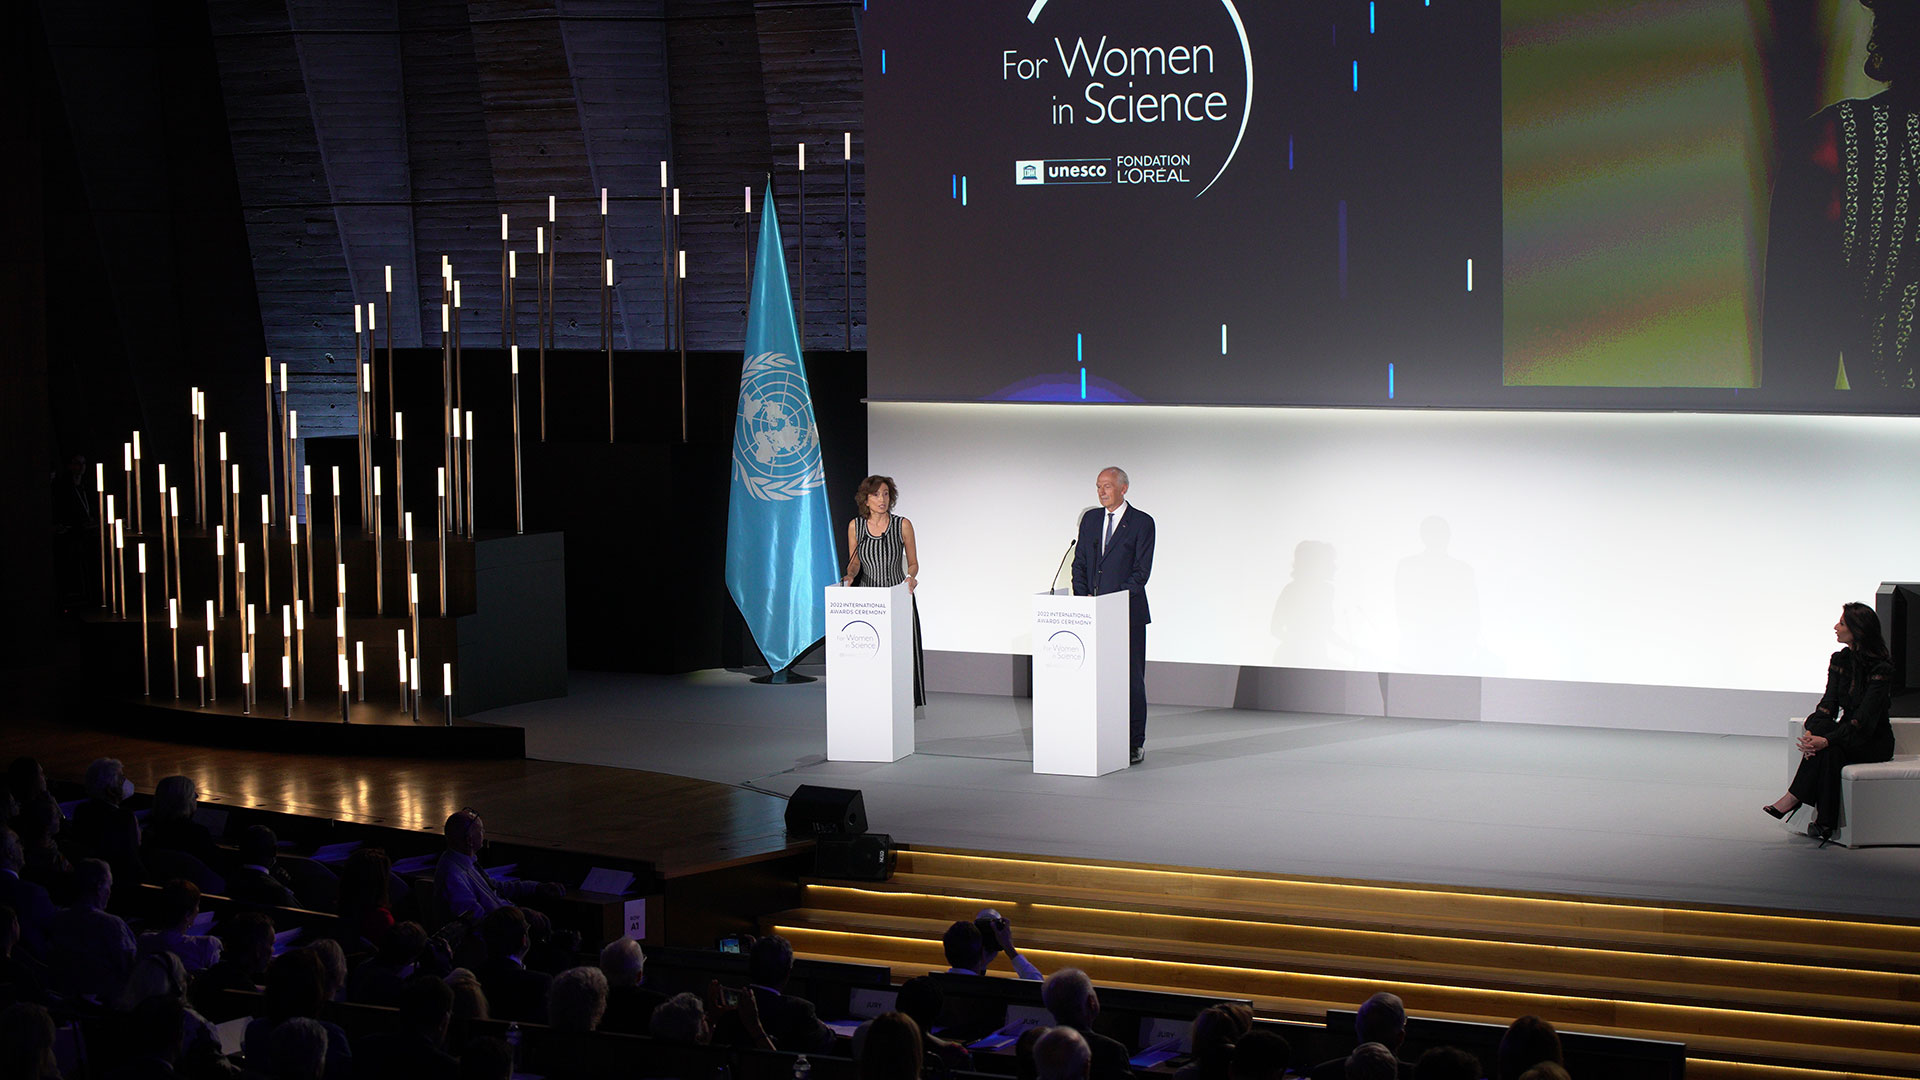 El Presidente de la fundación L’Oréal, Jean-Paul Agon, y la directora general de la UNESCO, Audrey Azoulay entregaron los premios en la  ceremonia a las científicas consagradas  
